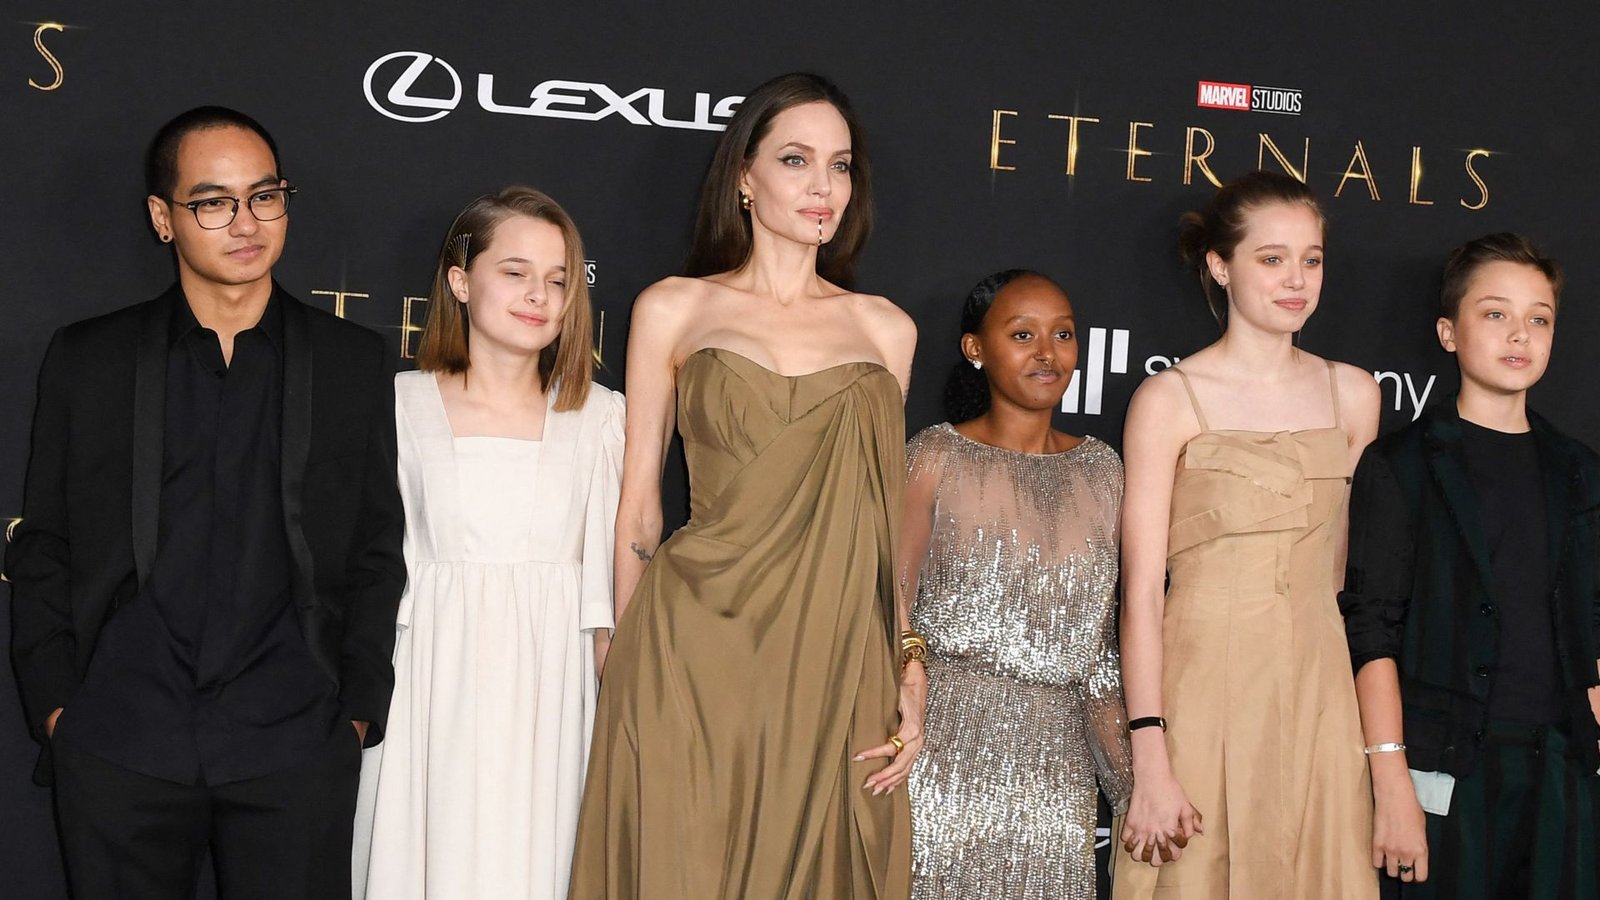 Inzwischen sind die größten Jolie-Kinder junge Erwachsene, die „kleinen“ Zwillinge Vivienne und Knox auch schon 15. Zu Brad Pitt  sollen die Kinder wenig Kontakt haben.Foto: AFP